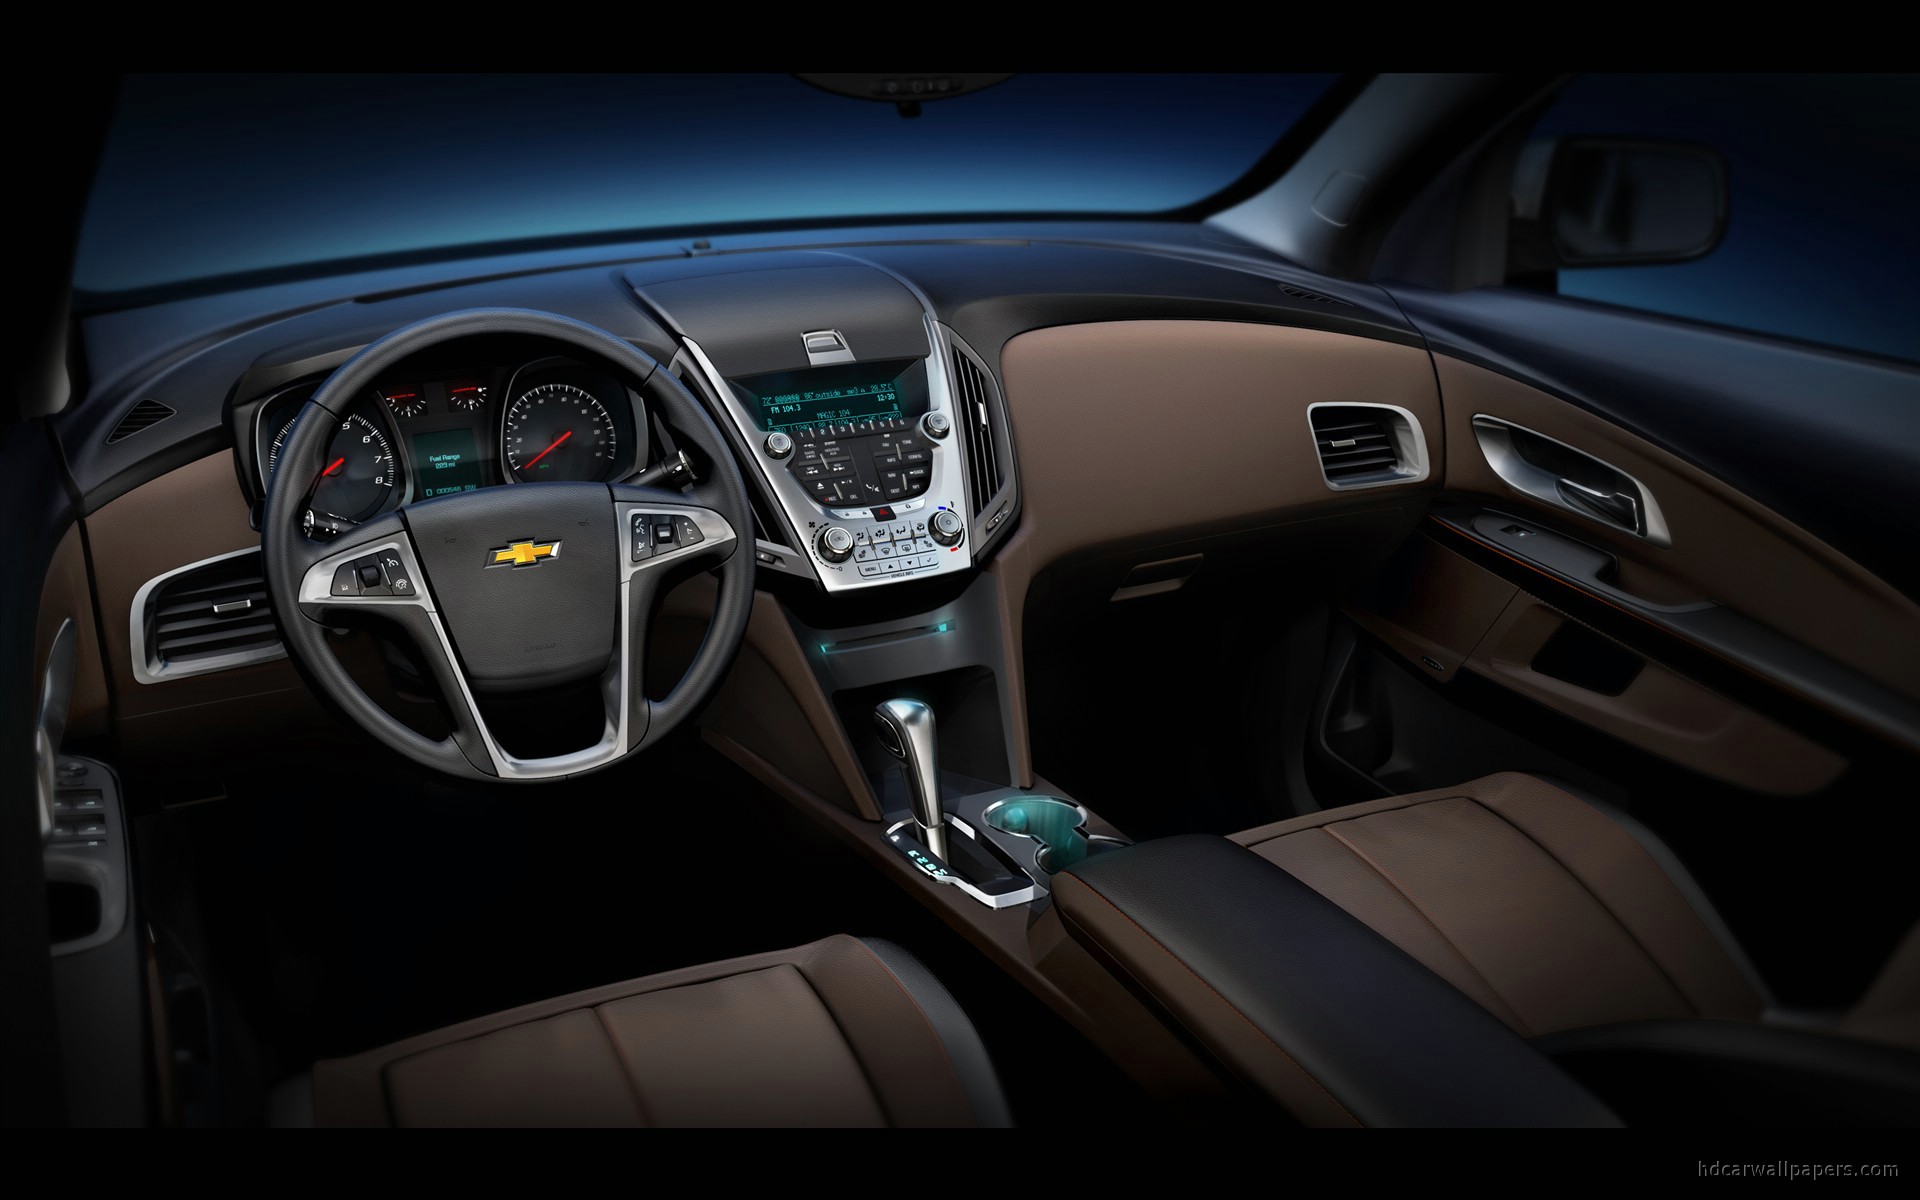 2010 Chevrolet Equinox Interior Wallpaper | HD Car Wallpapers | ID #436